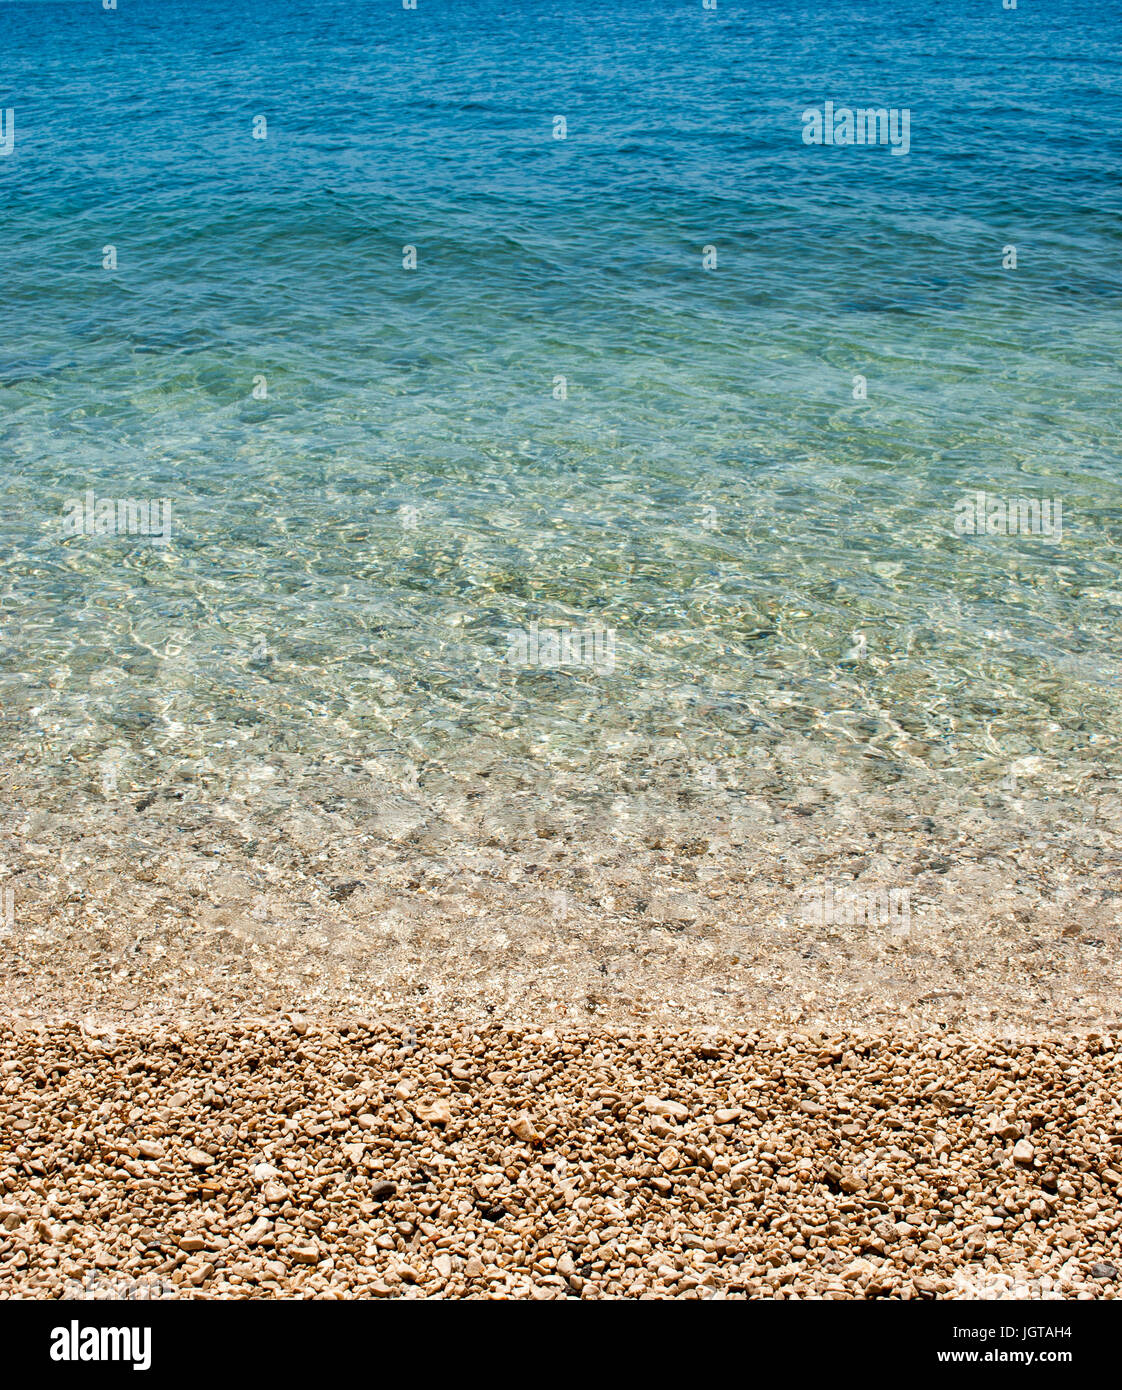 Quadratische Hintergrund Bild der ruhigen türkisfarbenen Meer mit Kieselstrand Stockfoto